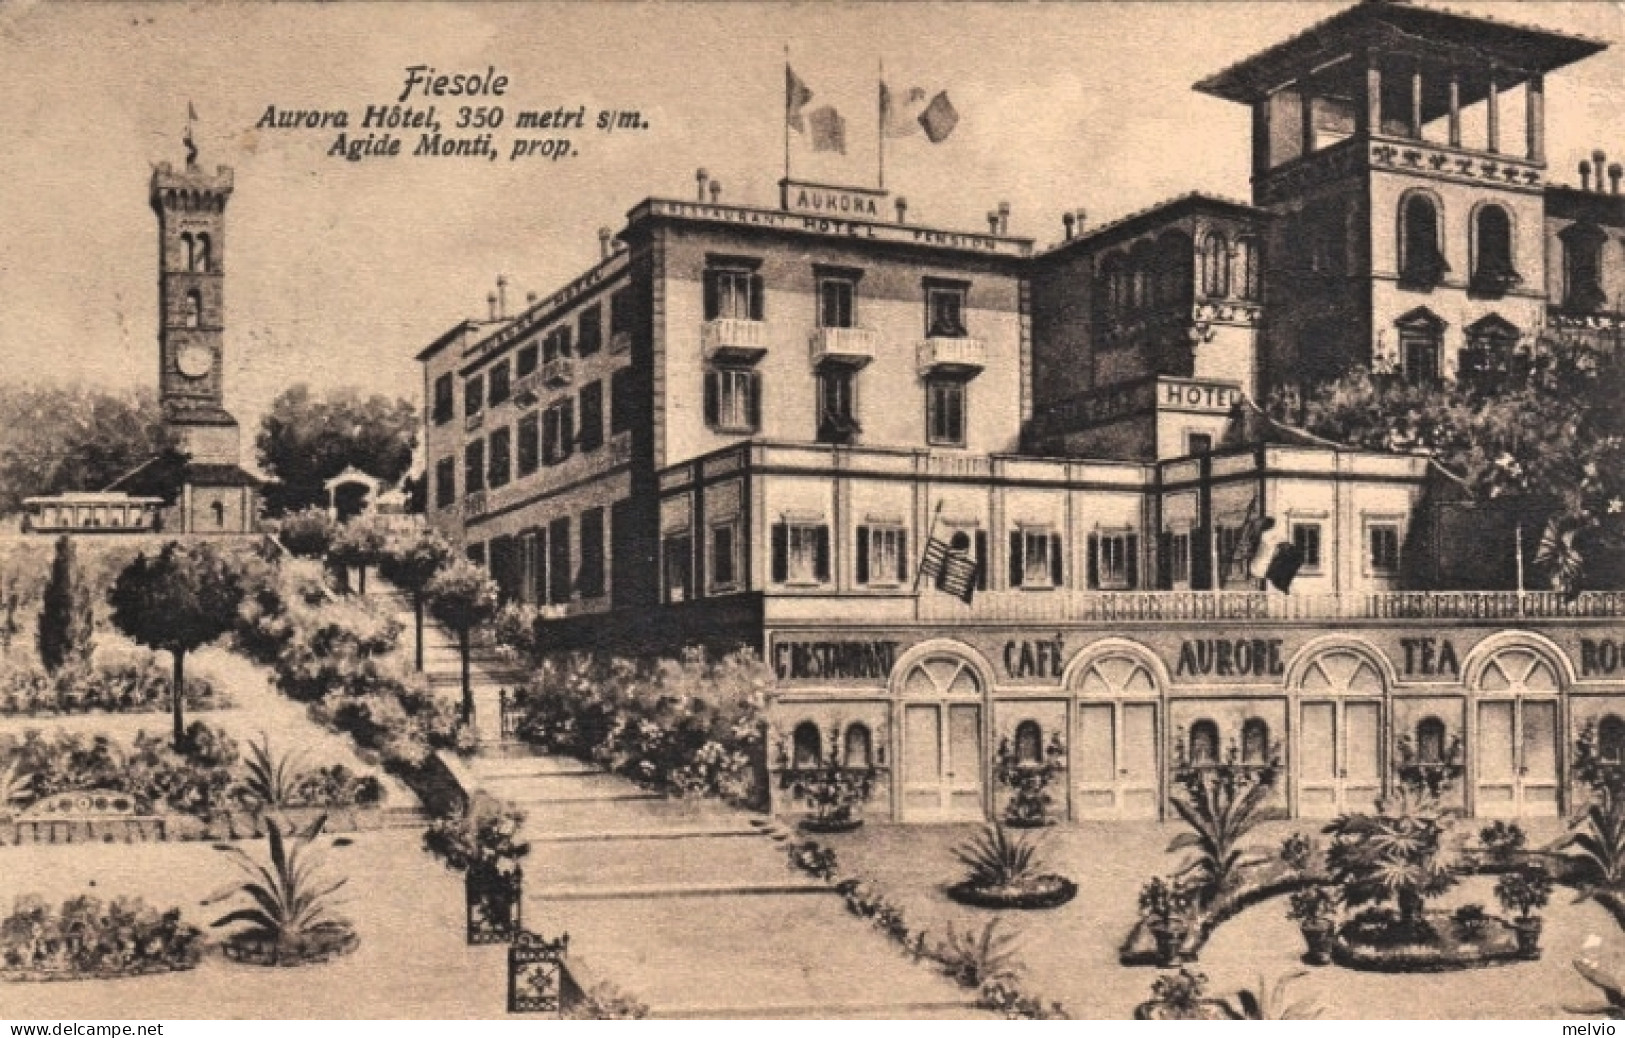 1913-Fiesole Firenze, Hotel Aurora, Viaggiata - Firenze (Florence)